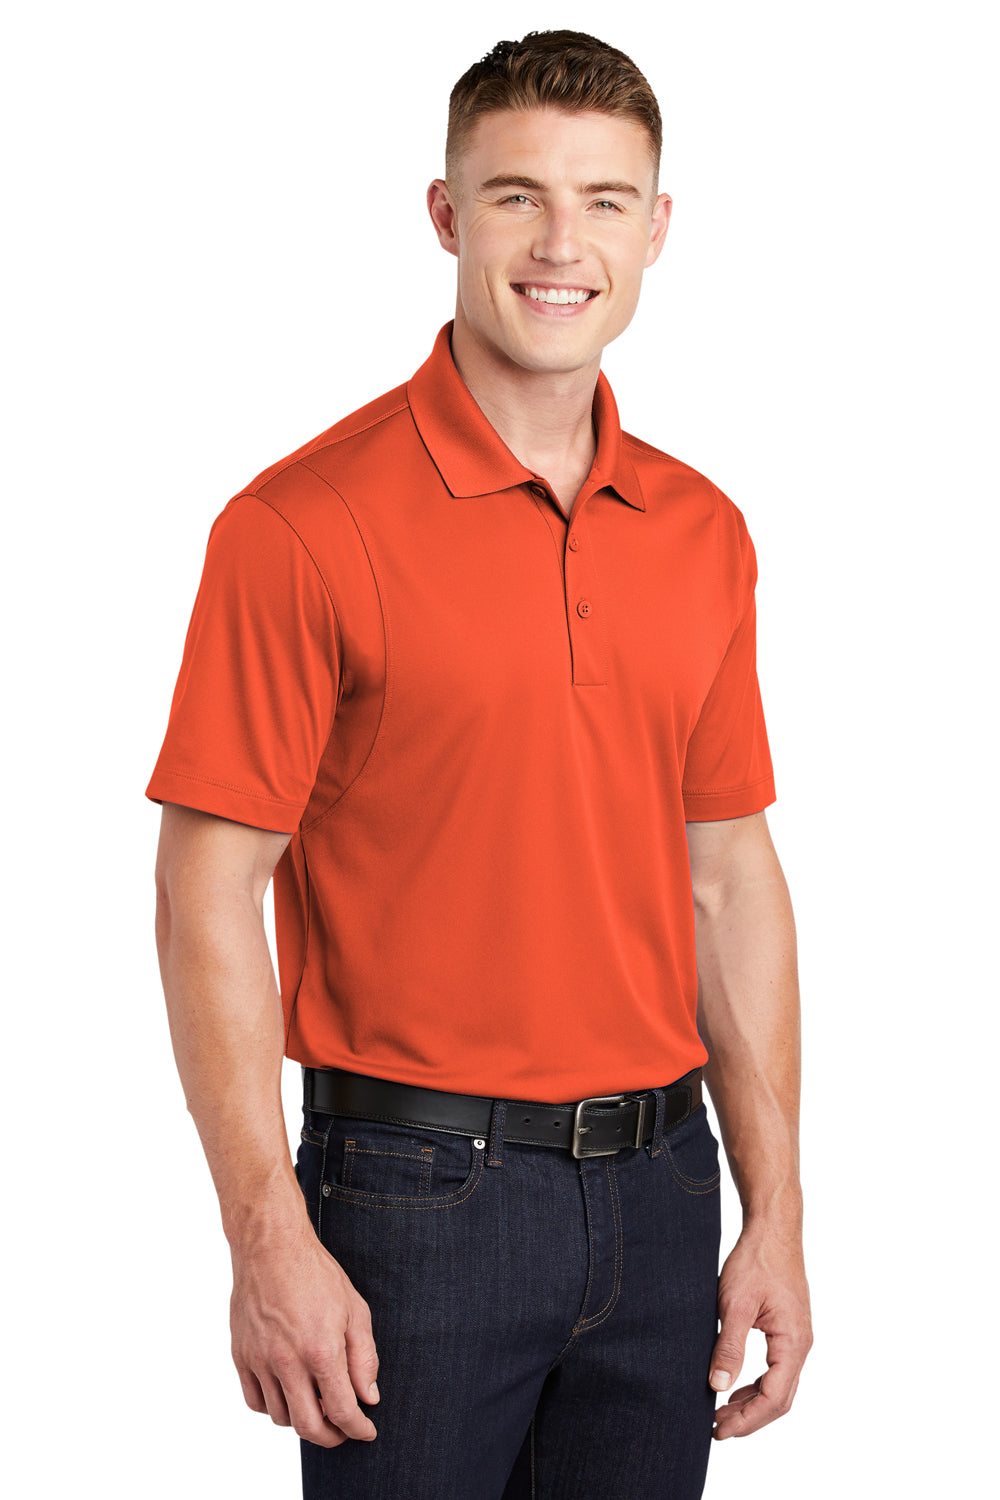 Sport-Tek ST650 Mens Sport-Wick Moisture Wicking Short Sleeve Polo Shirt Orange 3Q